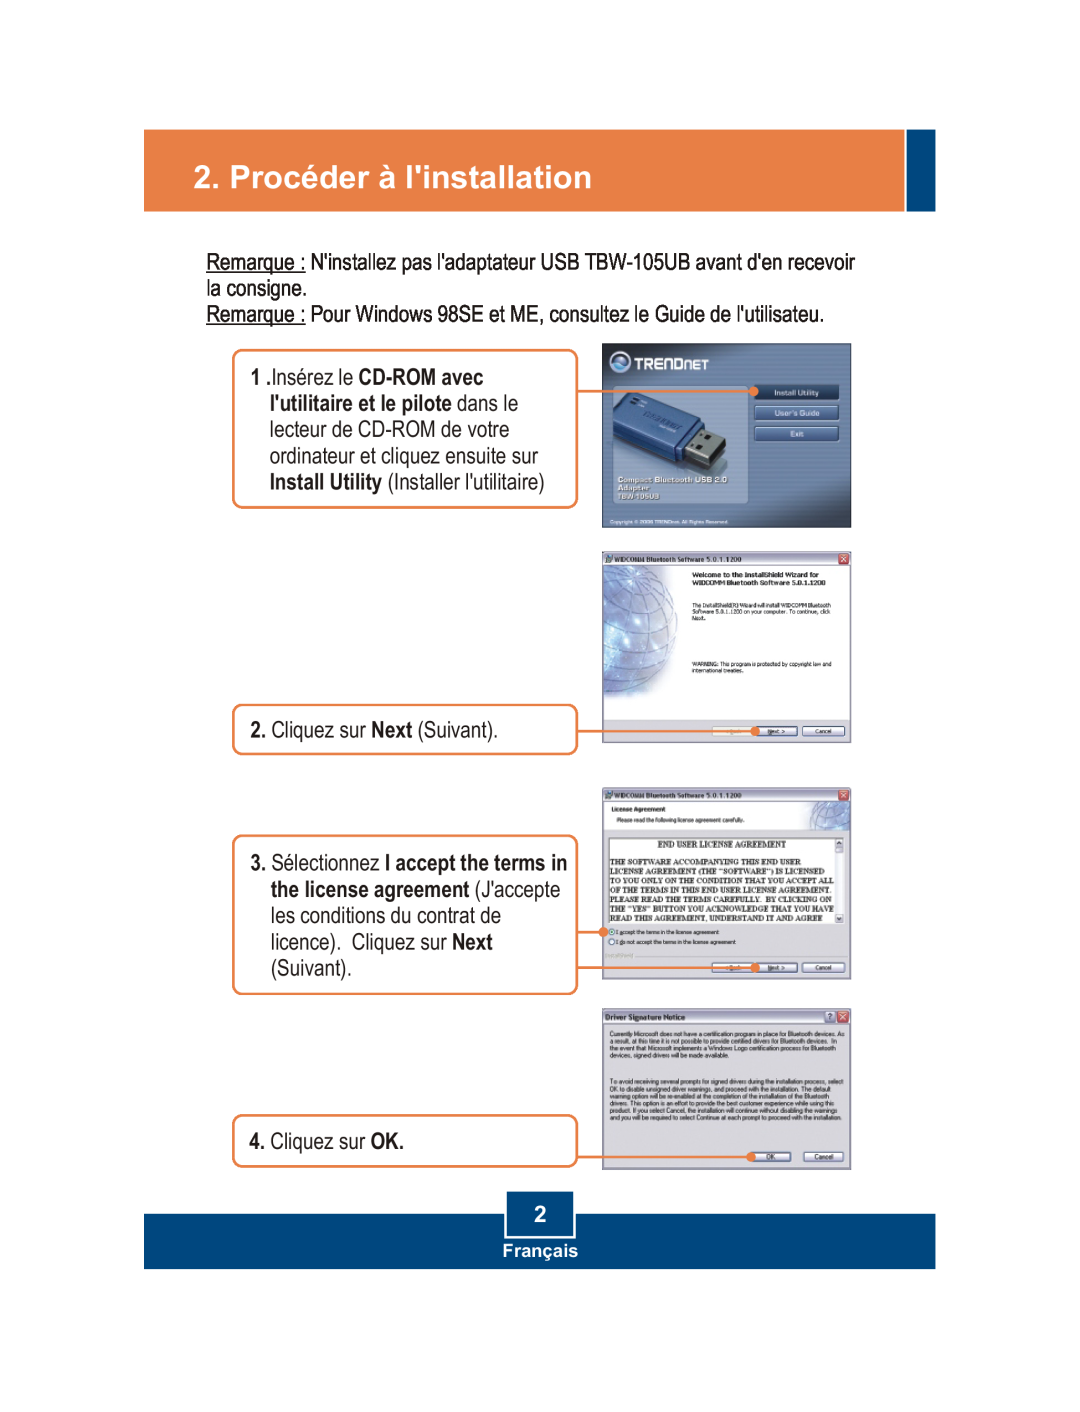 TRENDnet TBW-105UB manual Procéder à linstallation, licence. Cliquez sur Next Suivant 4. Cliquez sur OK, Français 